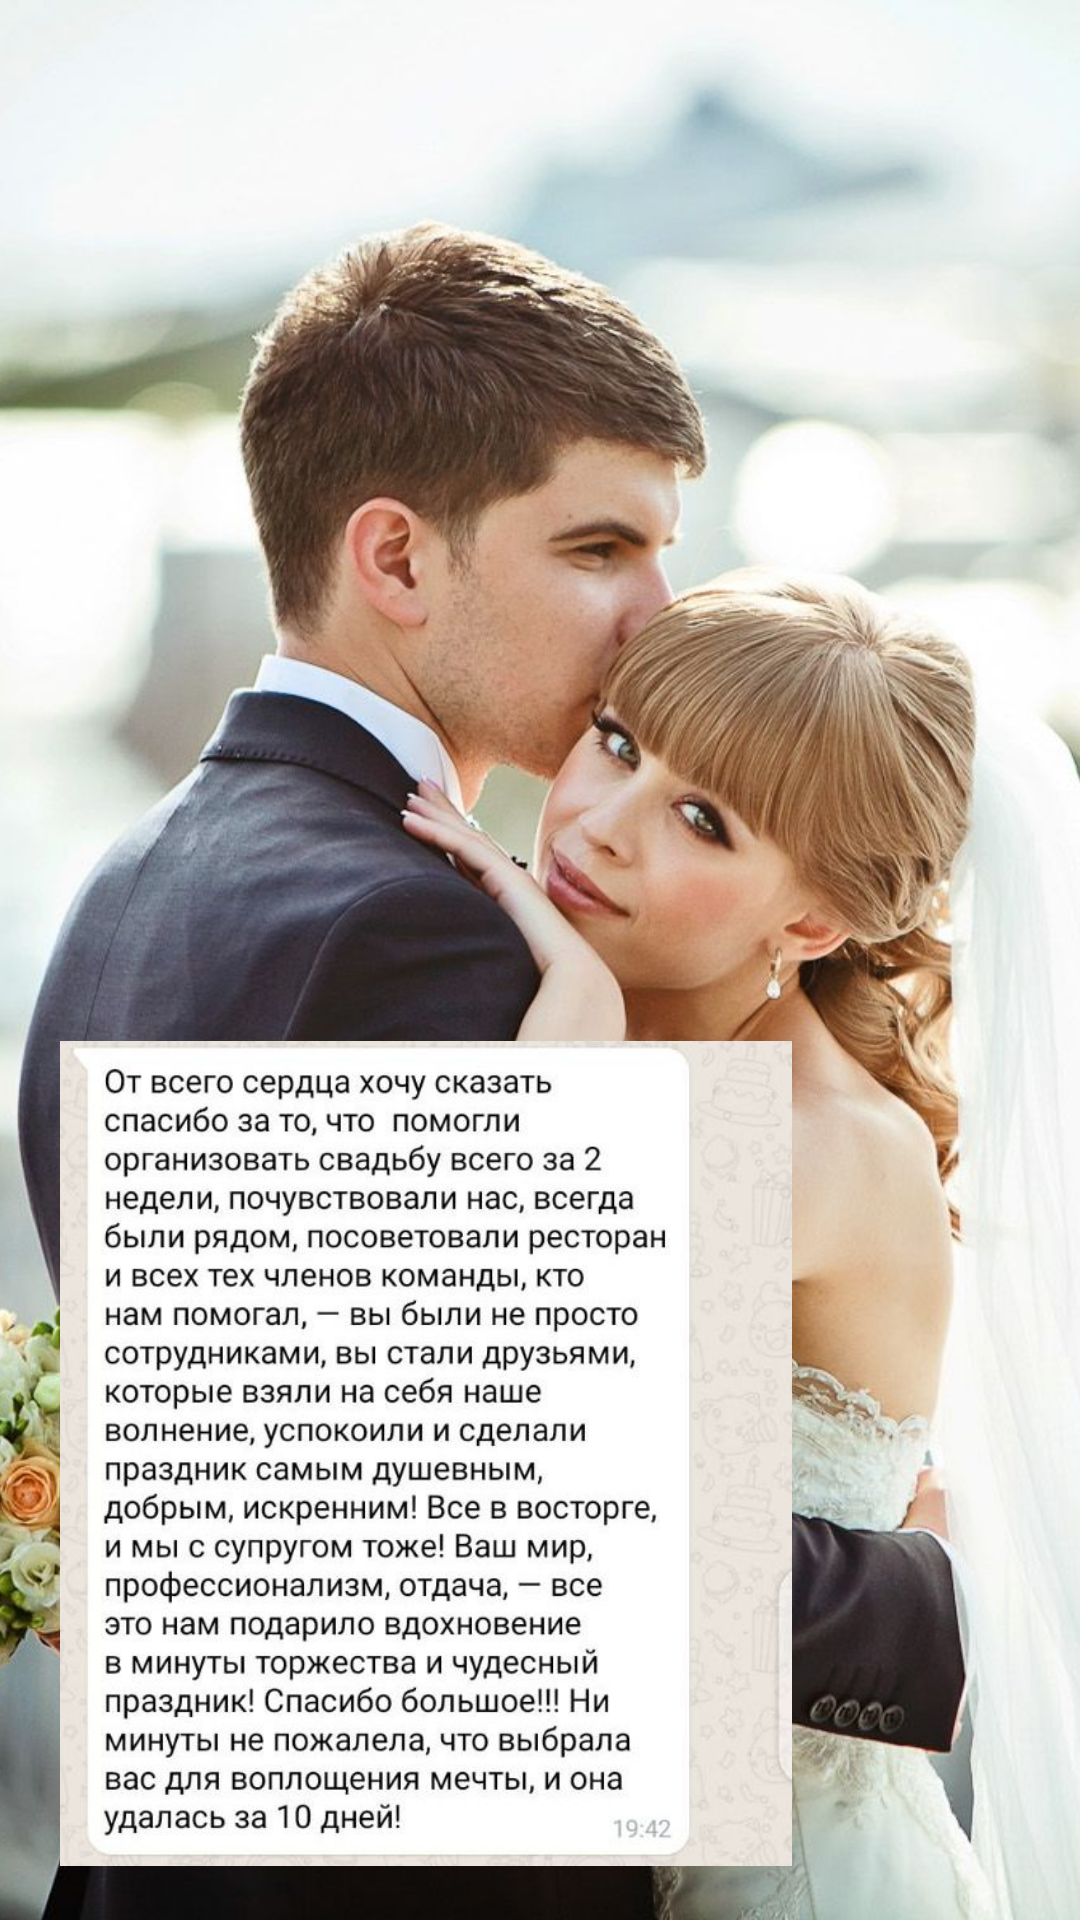 Организация свадьбы во Владимире
от компании Pandaevent